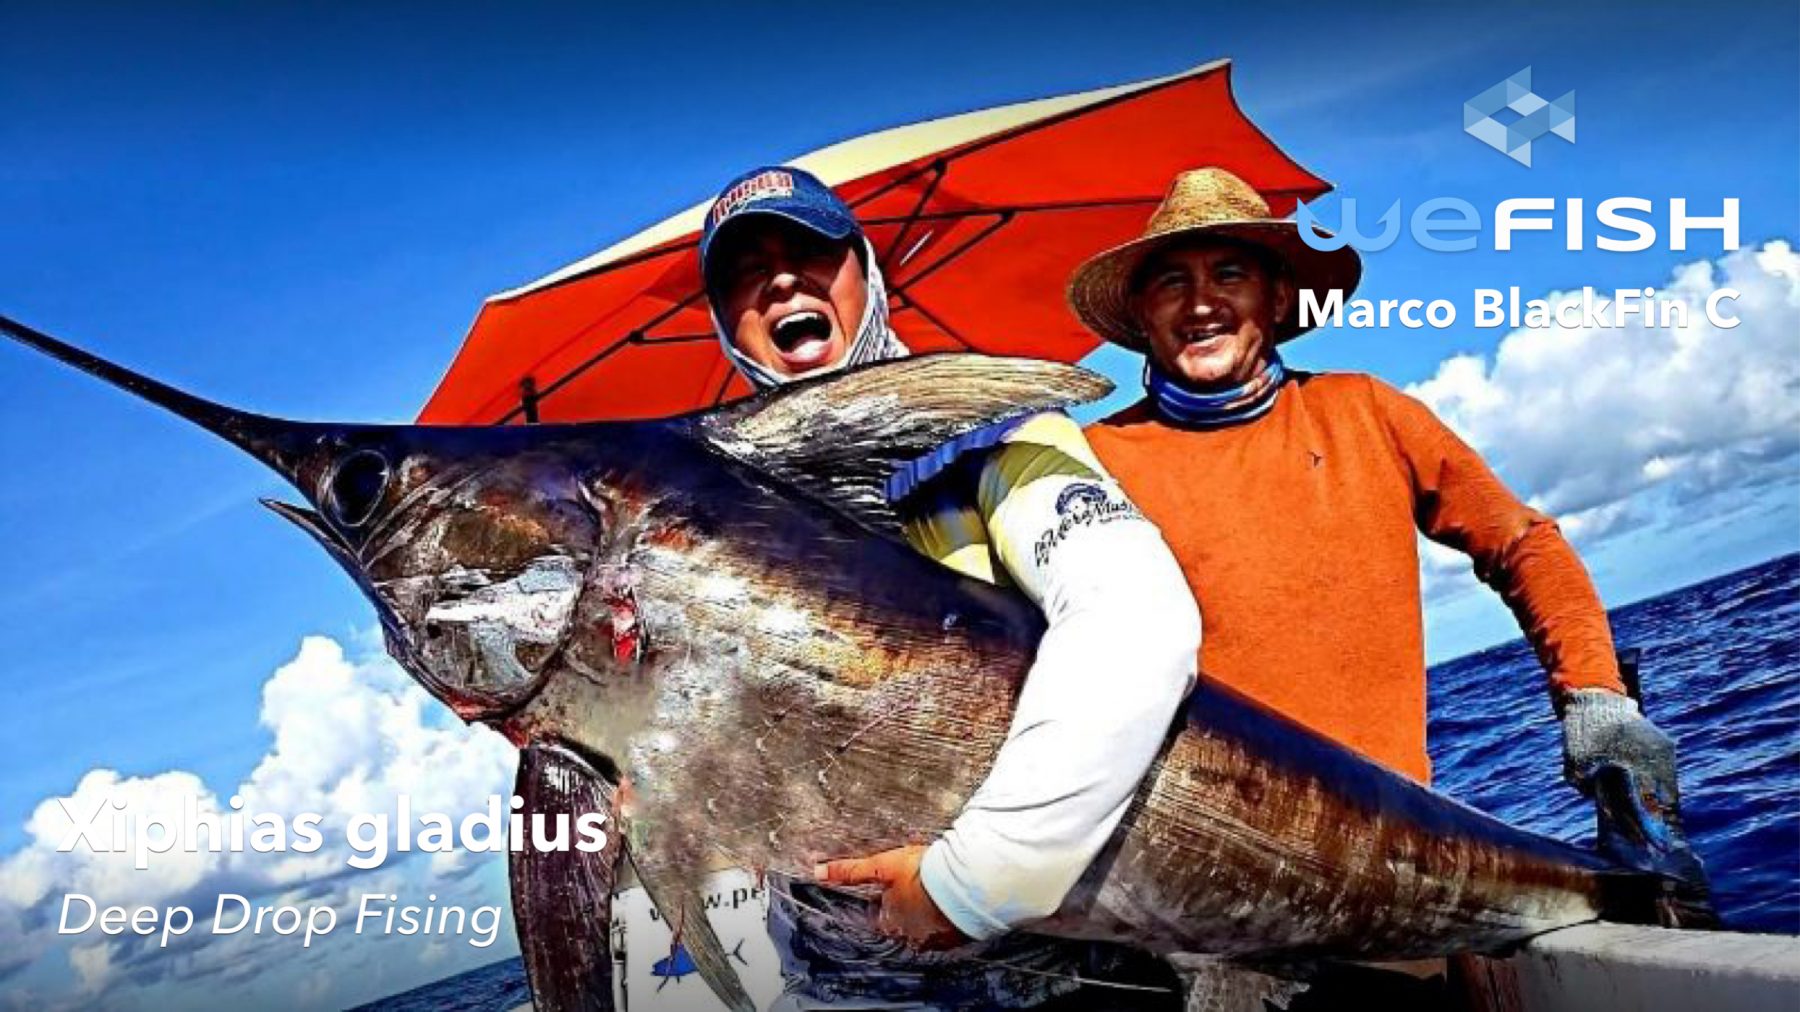 Fishing for swordfish
Best Fishing Spots in Florida
fishing app wefish